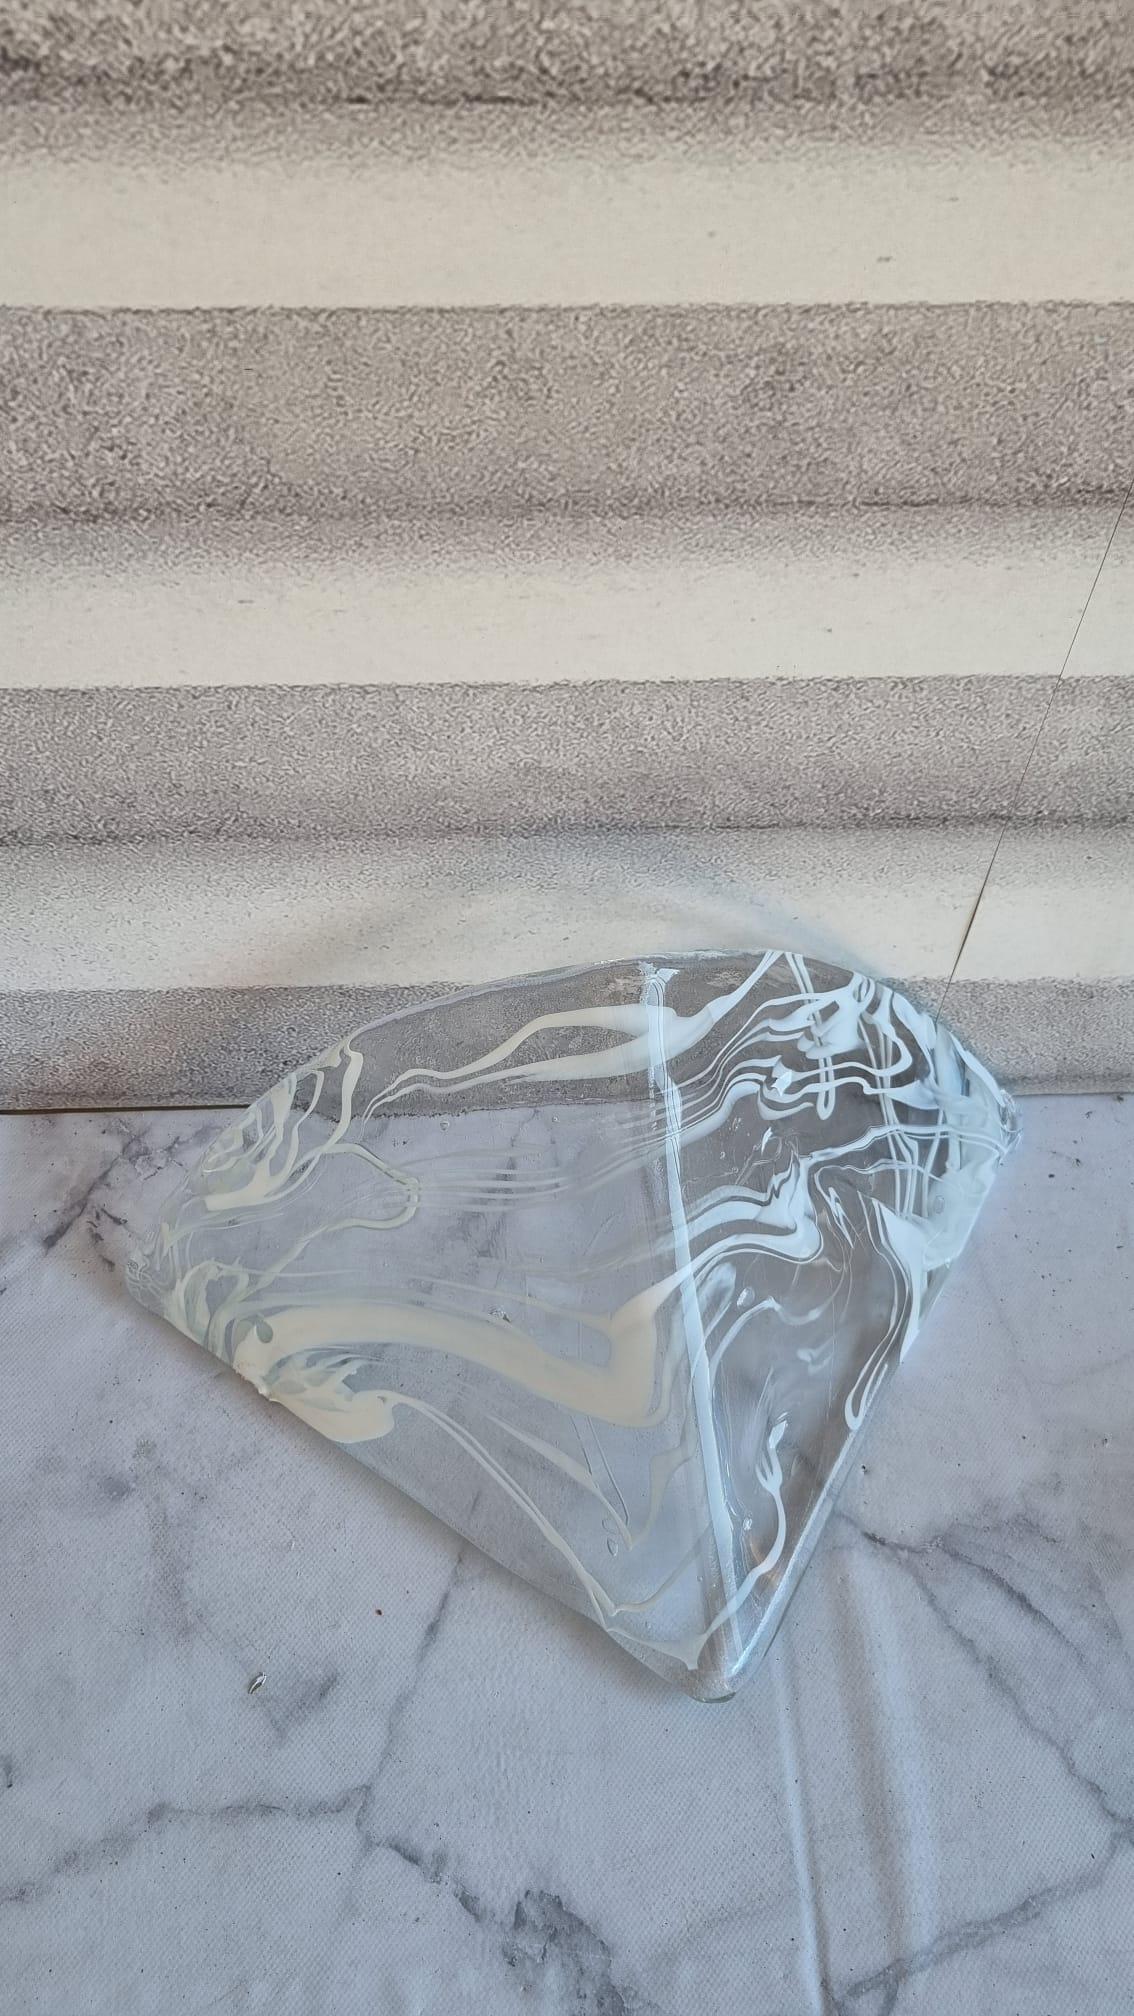 Incroyable ensemble de trois appliques murales modernes en verre de Murano avec plaque en métal laqué. Cette pièce magnifique a été conçue en Italie dans les années 1980.
Chaque applique est remarquable par la façon dont le triangle est dessiné en